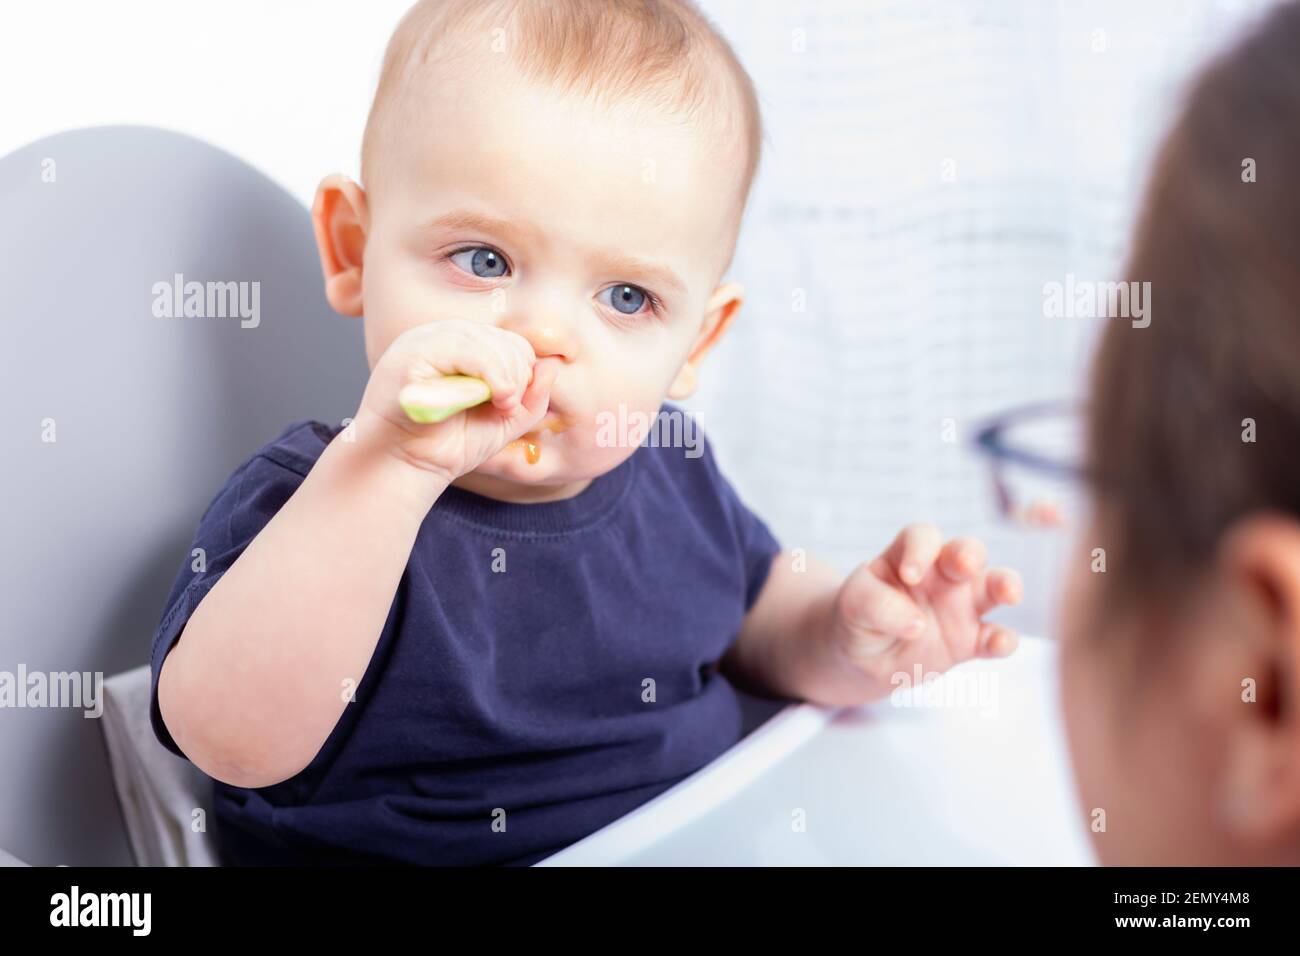 Lindo niño caucásico está sentado en silla alta y comiendo con cuchara de plástico. Mamá está orgullosa de su hijo, no le ayuda. El bebé está comiendo por su cuenta. Foto de stock